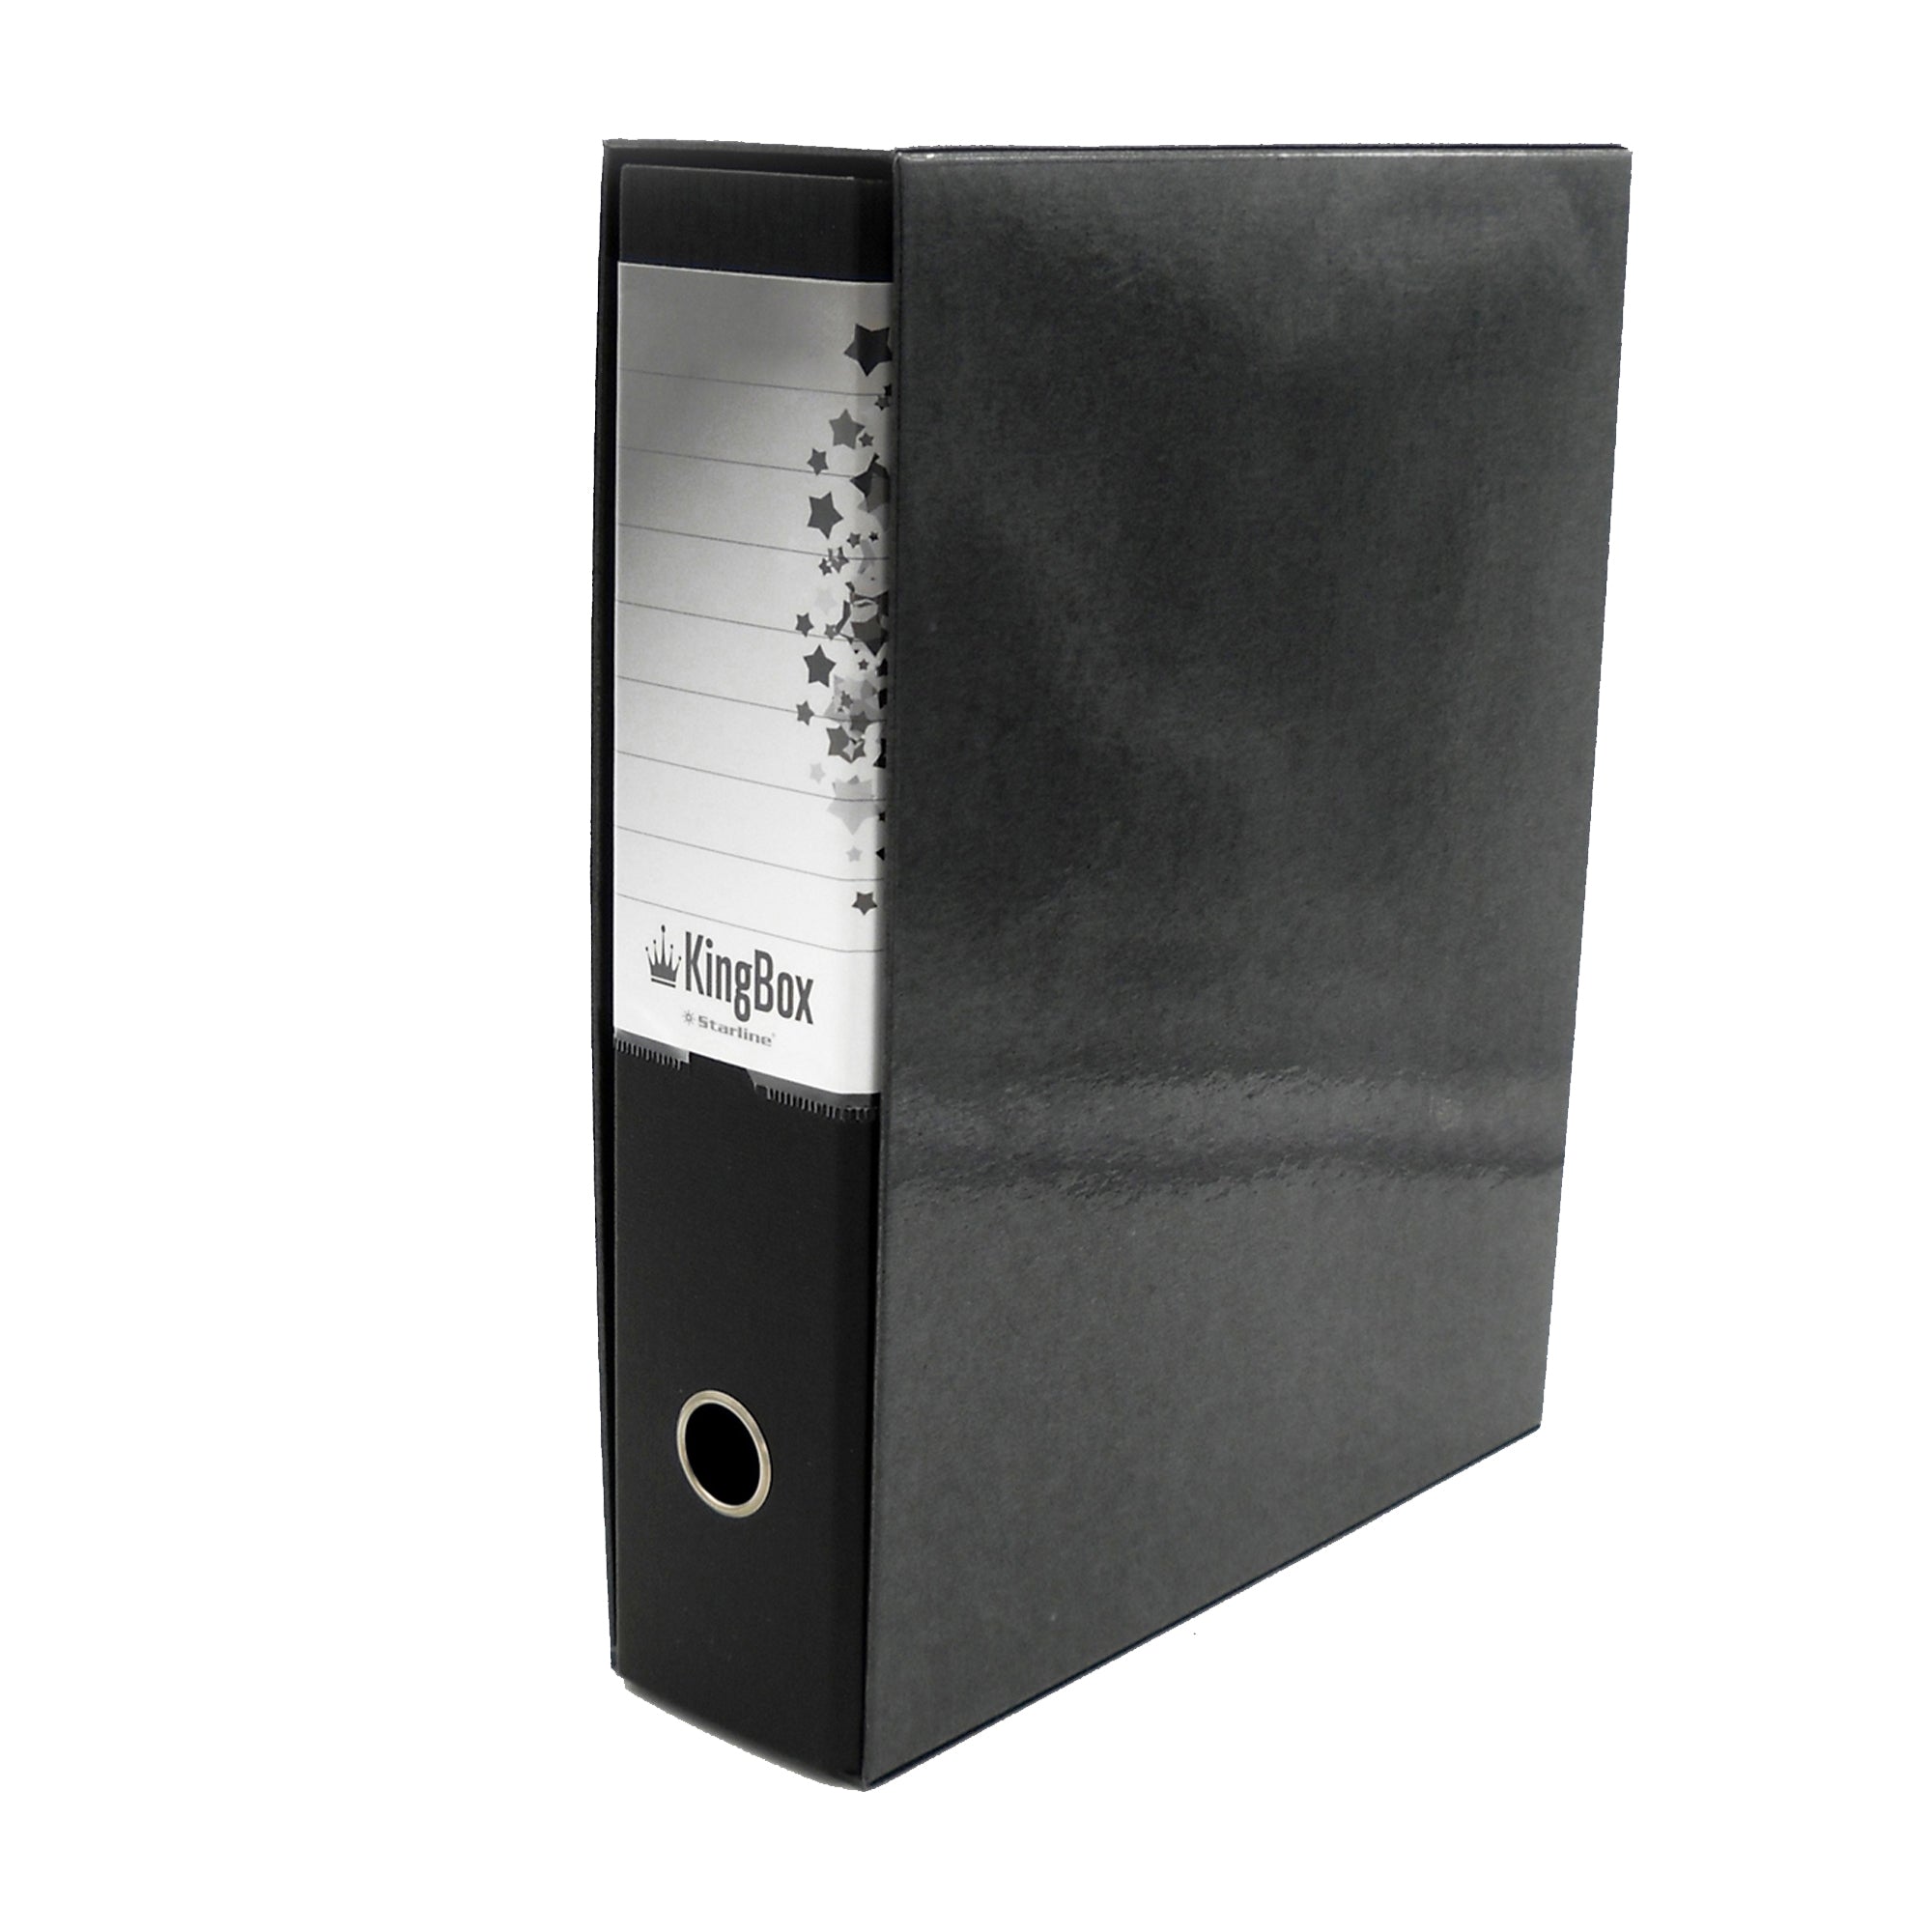 starline-registratore-kingbox-f-to-protocollo-dorso-8cm-nero